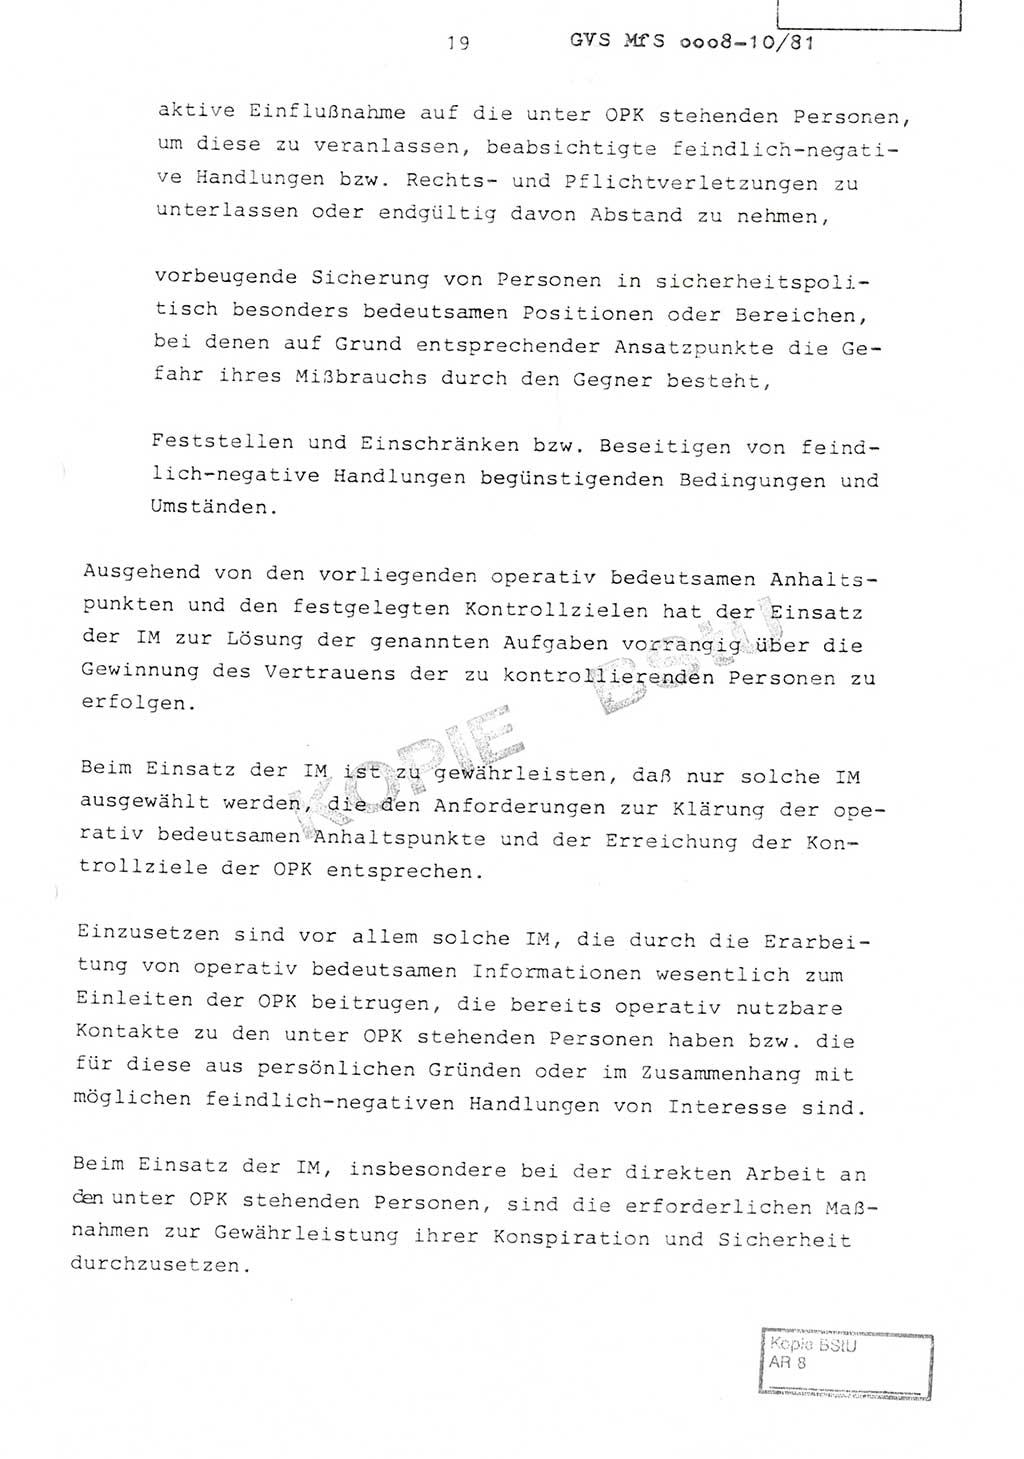 Richtlinie Nr. 1/81 über die operative Personenkontrolle (OPK), Ministerium für Staatssicherheit (MfS) [Deutsche Demokratische Republik (DDR)], Der Minister, Geheime Verschlußsache (GVS) ooo8-10/81, Berlin 1981, Blatt 19 (RL 1/81 OPK DDR MfS Min. GVS ooo8-10/81 1981, Bl. 19)